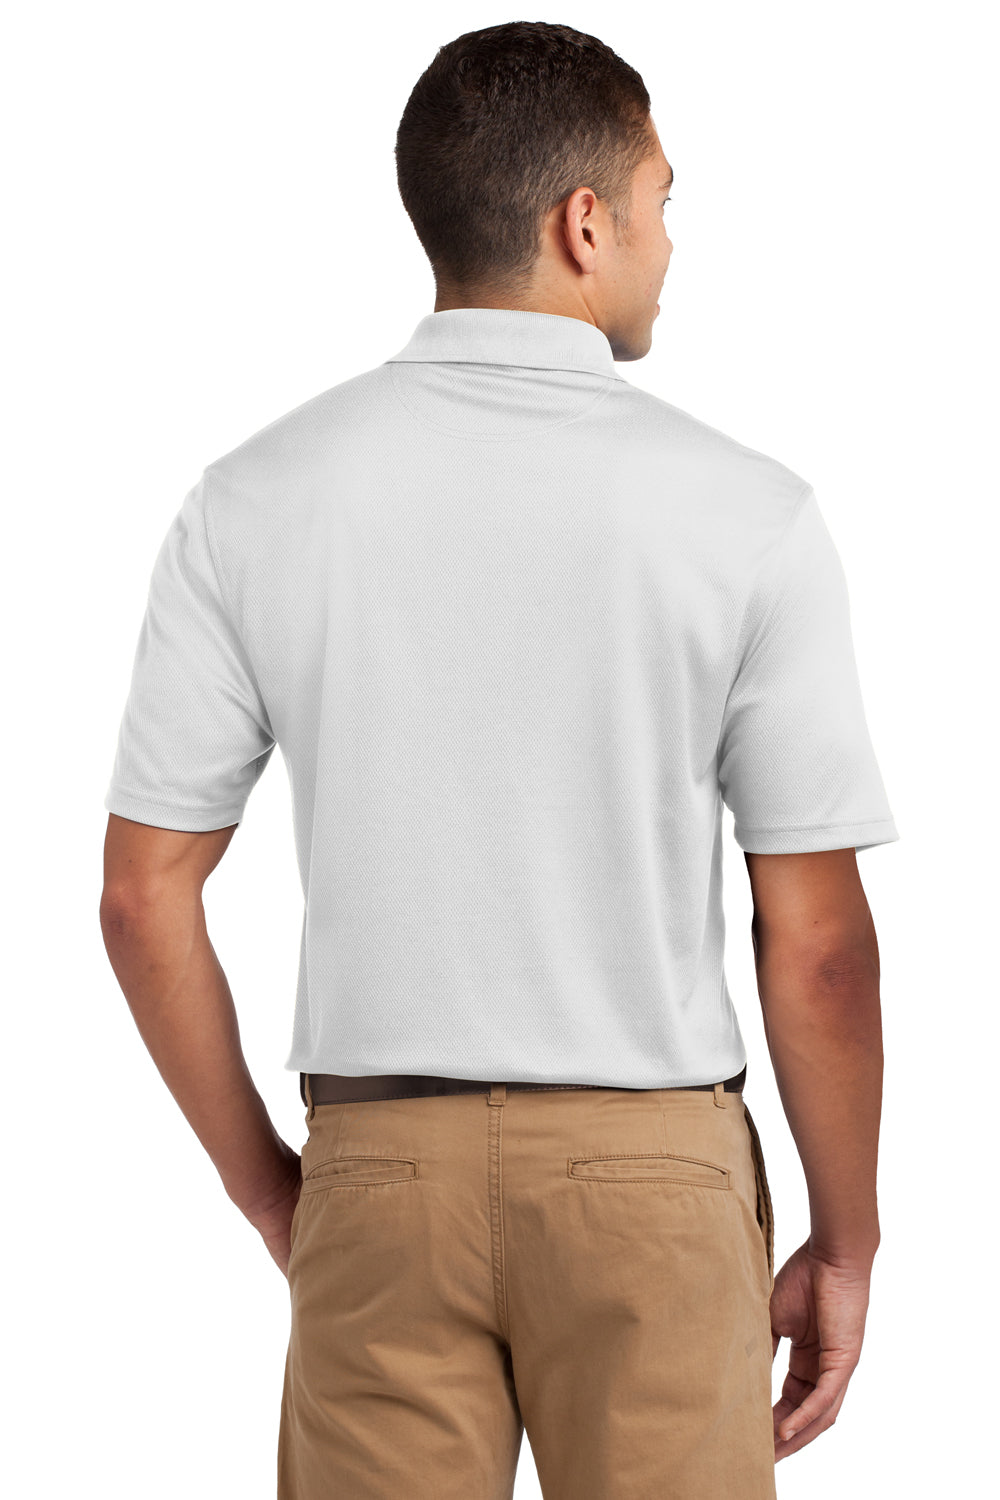 Sport-Tek K469 Mens Dri-Mesh Moisture Wicking Short Sleeve Polo Shirt White Back